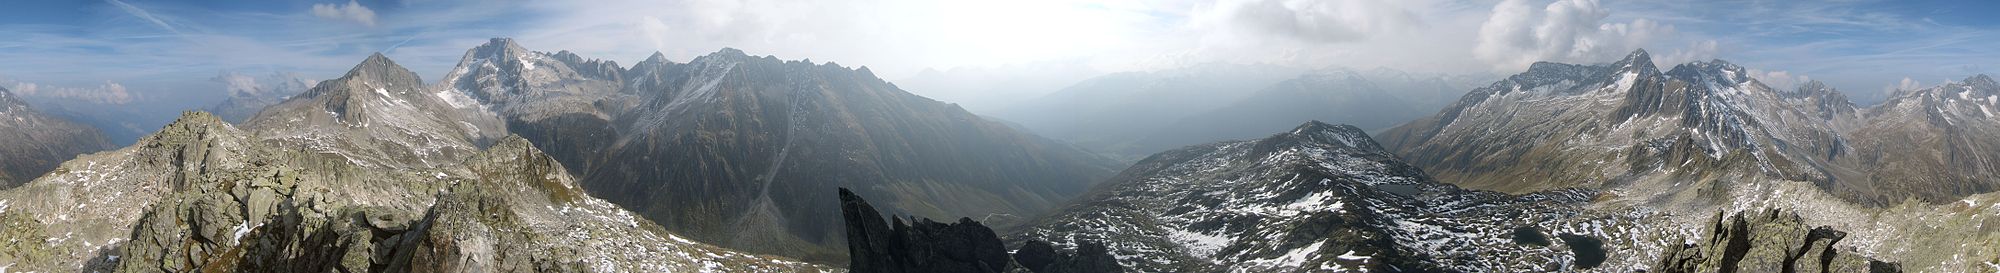 360°-Panorama vom Südgipfel